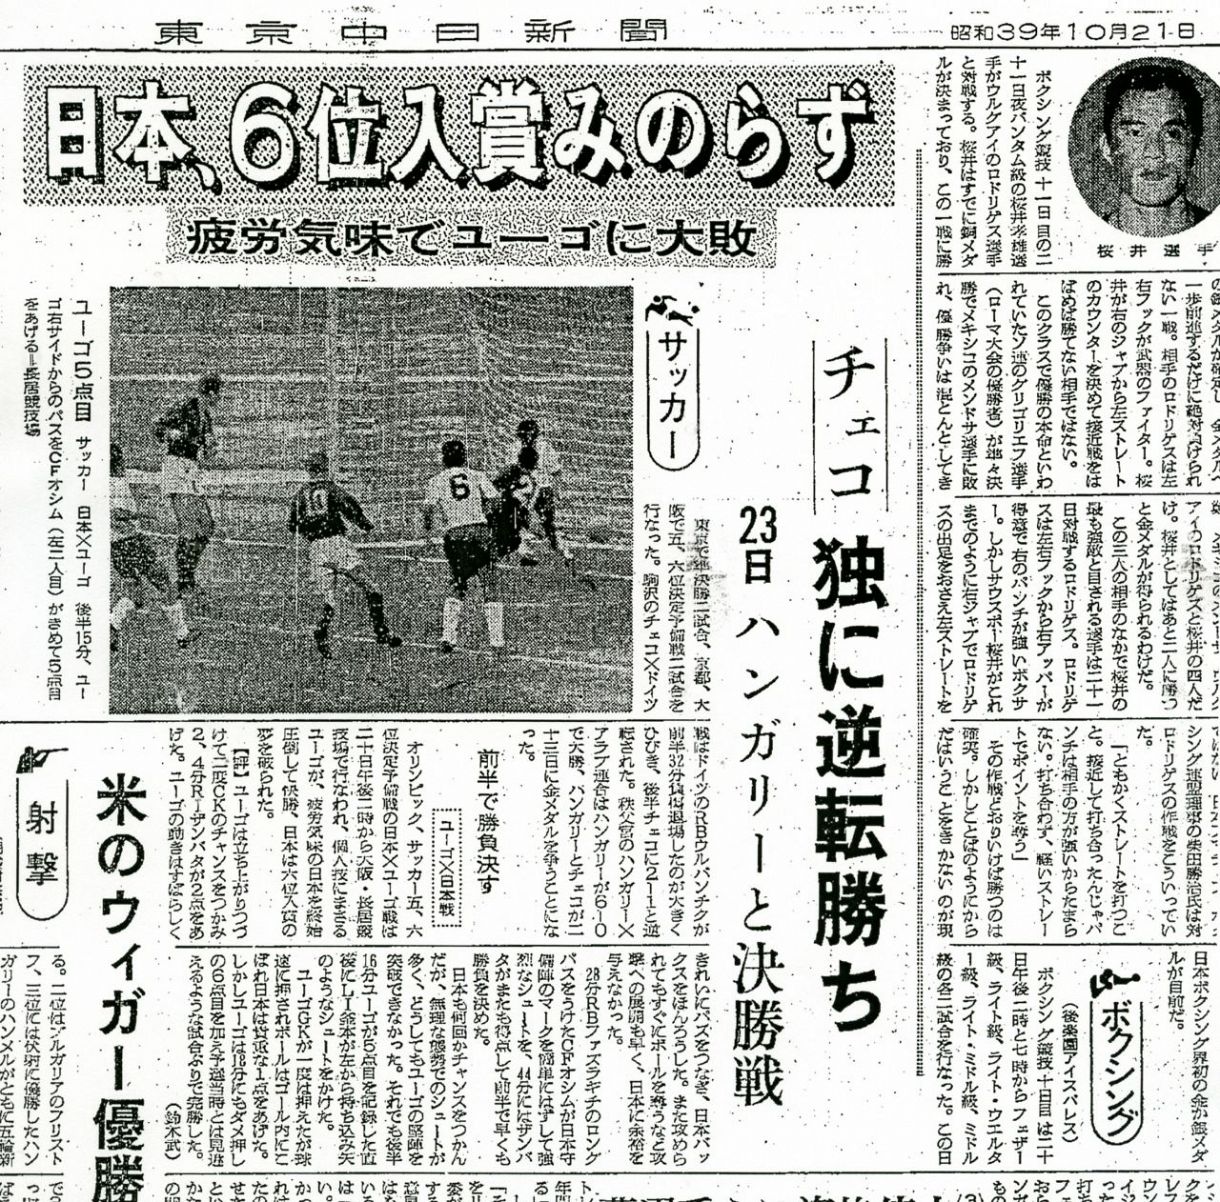 オシムさんが1964年東京五輪で感じた日本人の“人間力”…縁の始まり旧 